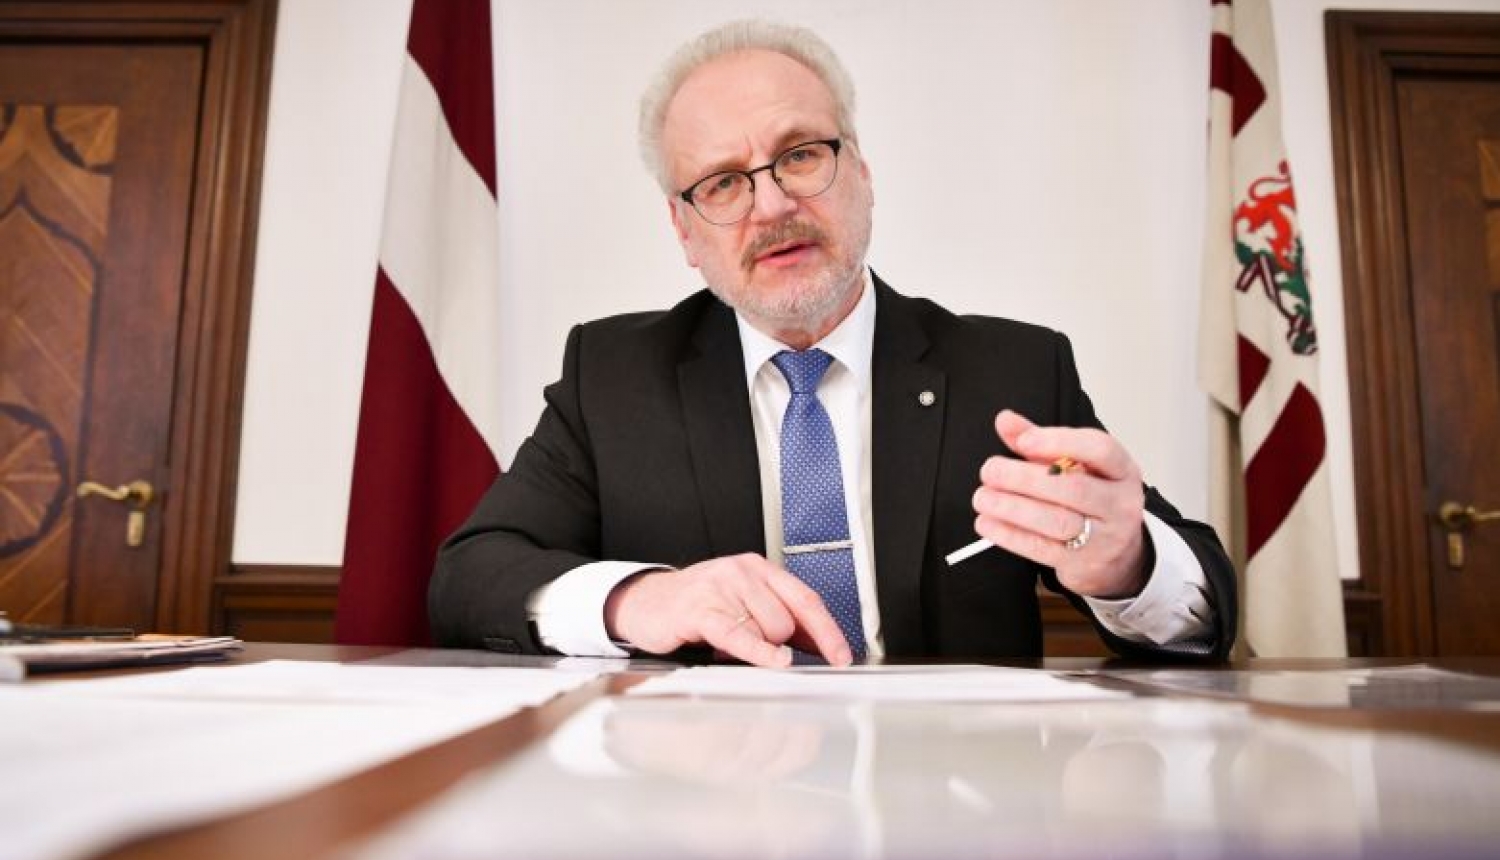 Valsts prezidents aicina veikt papildinājumus likumprojektā “Grozījumi Elektronisko plašsaziņas līdzekļu likumā”, lai stiprinātu Latvijas informatīvo telpu